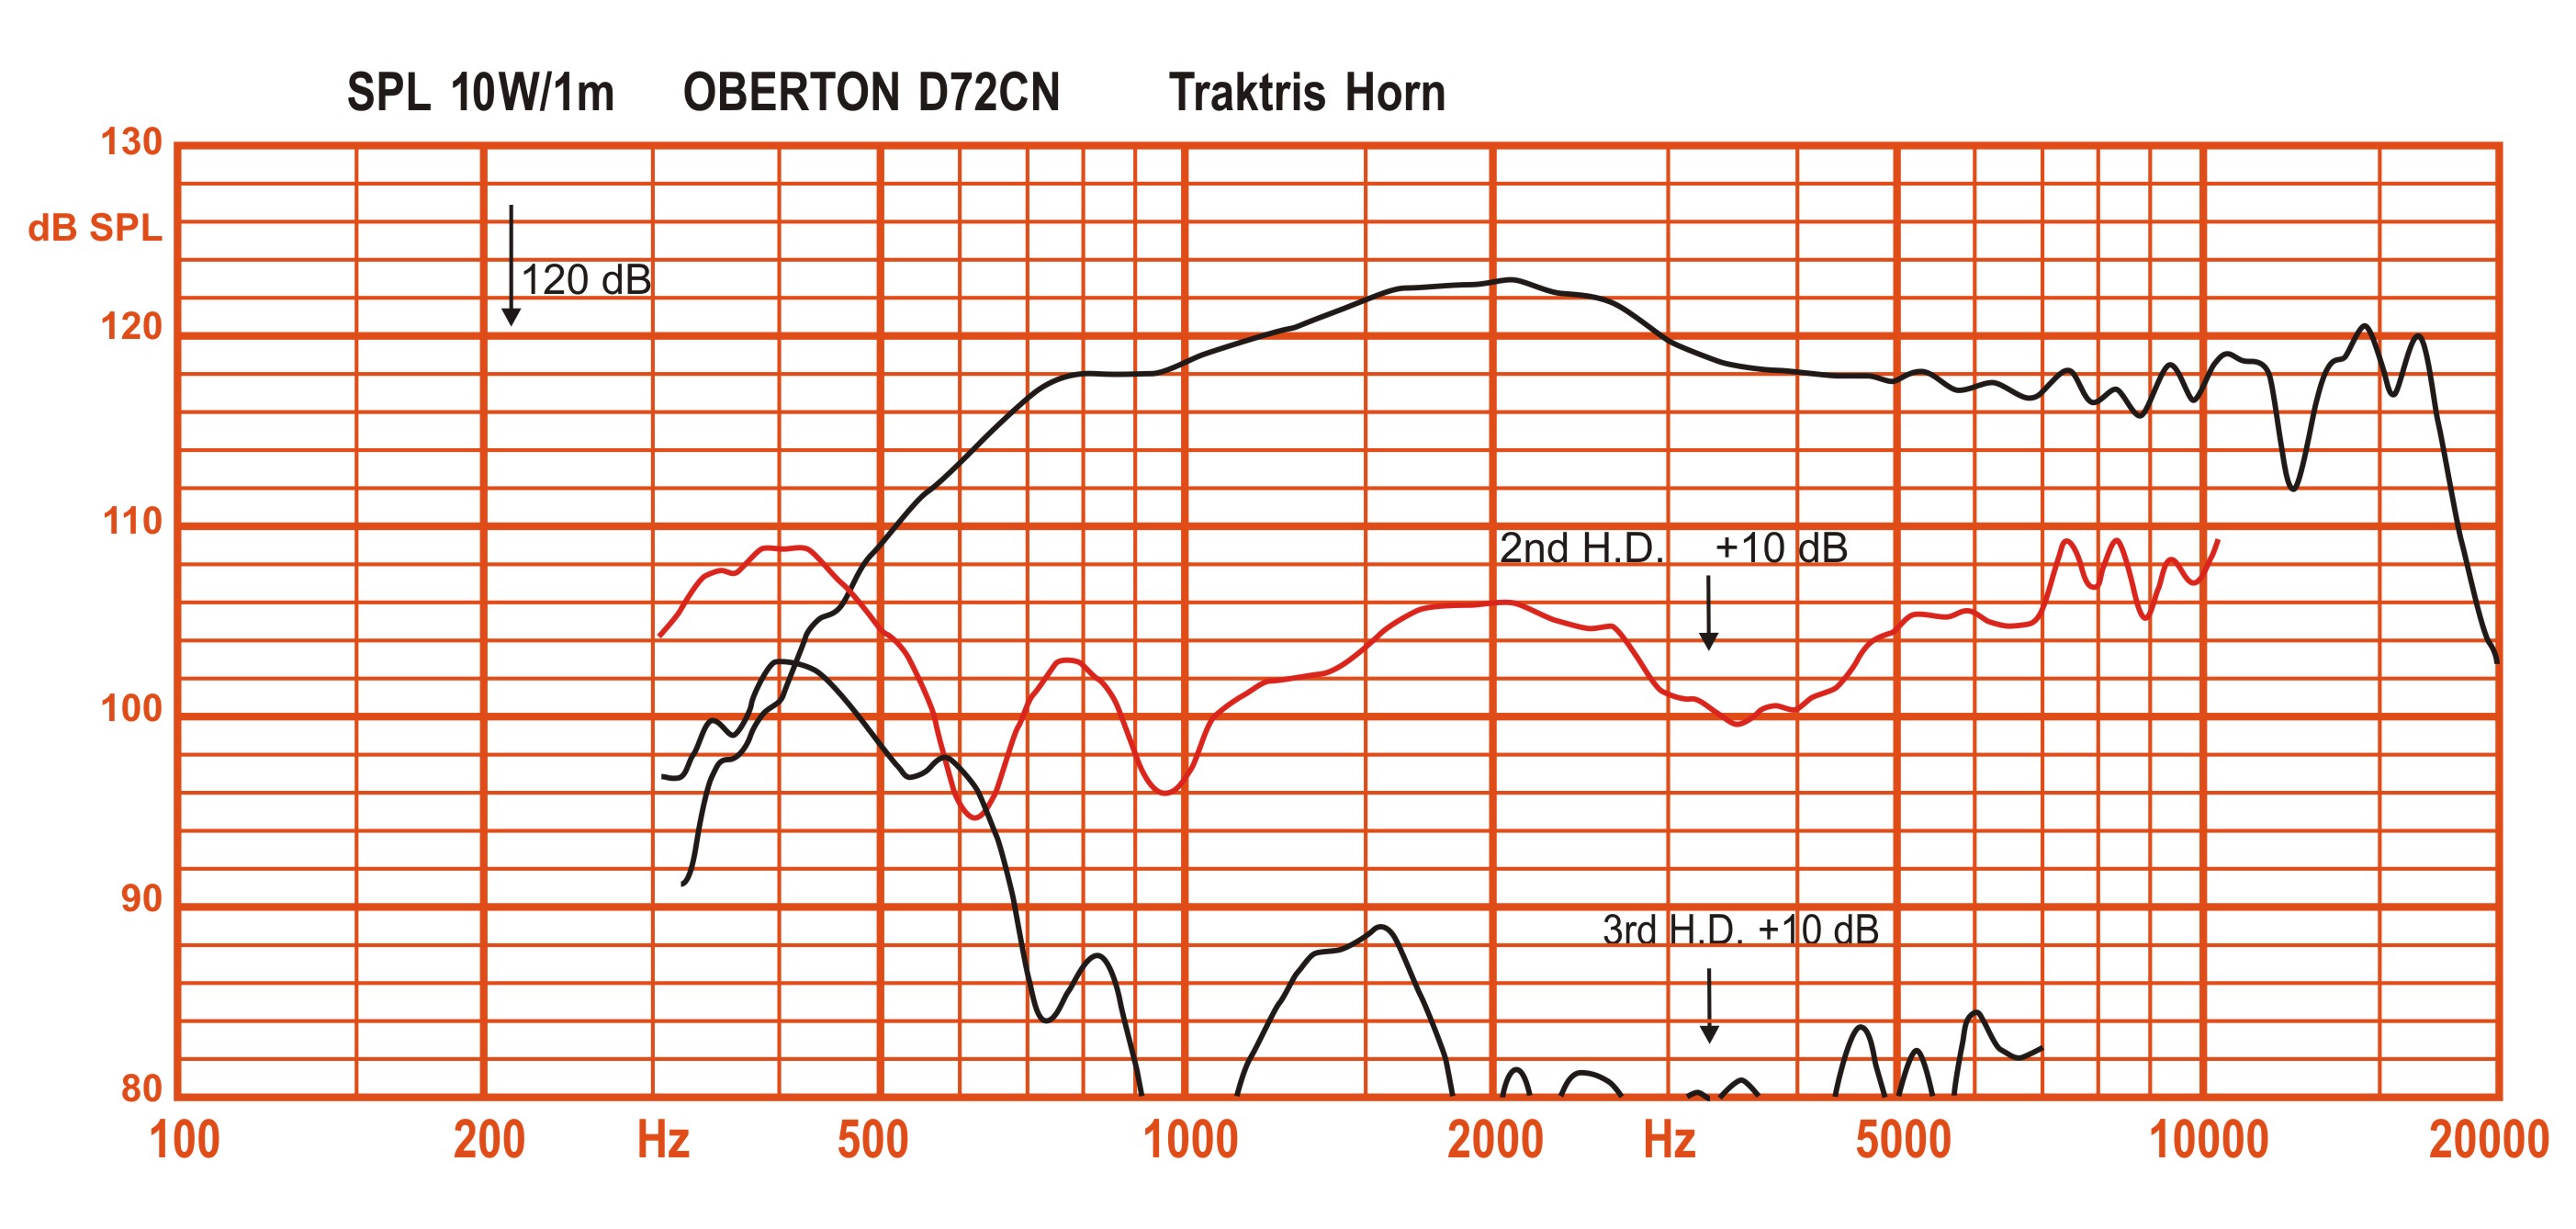 Oberton D72CN